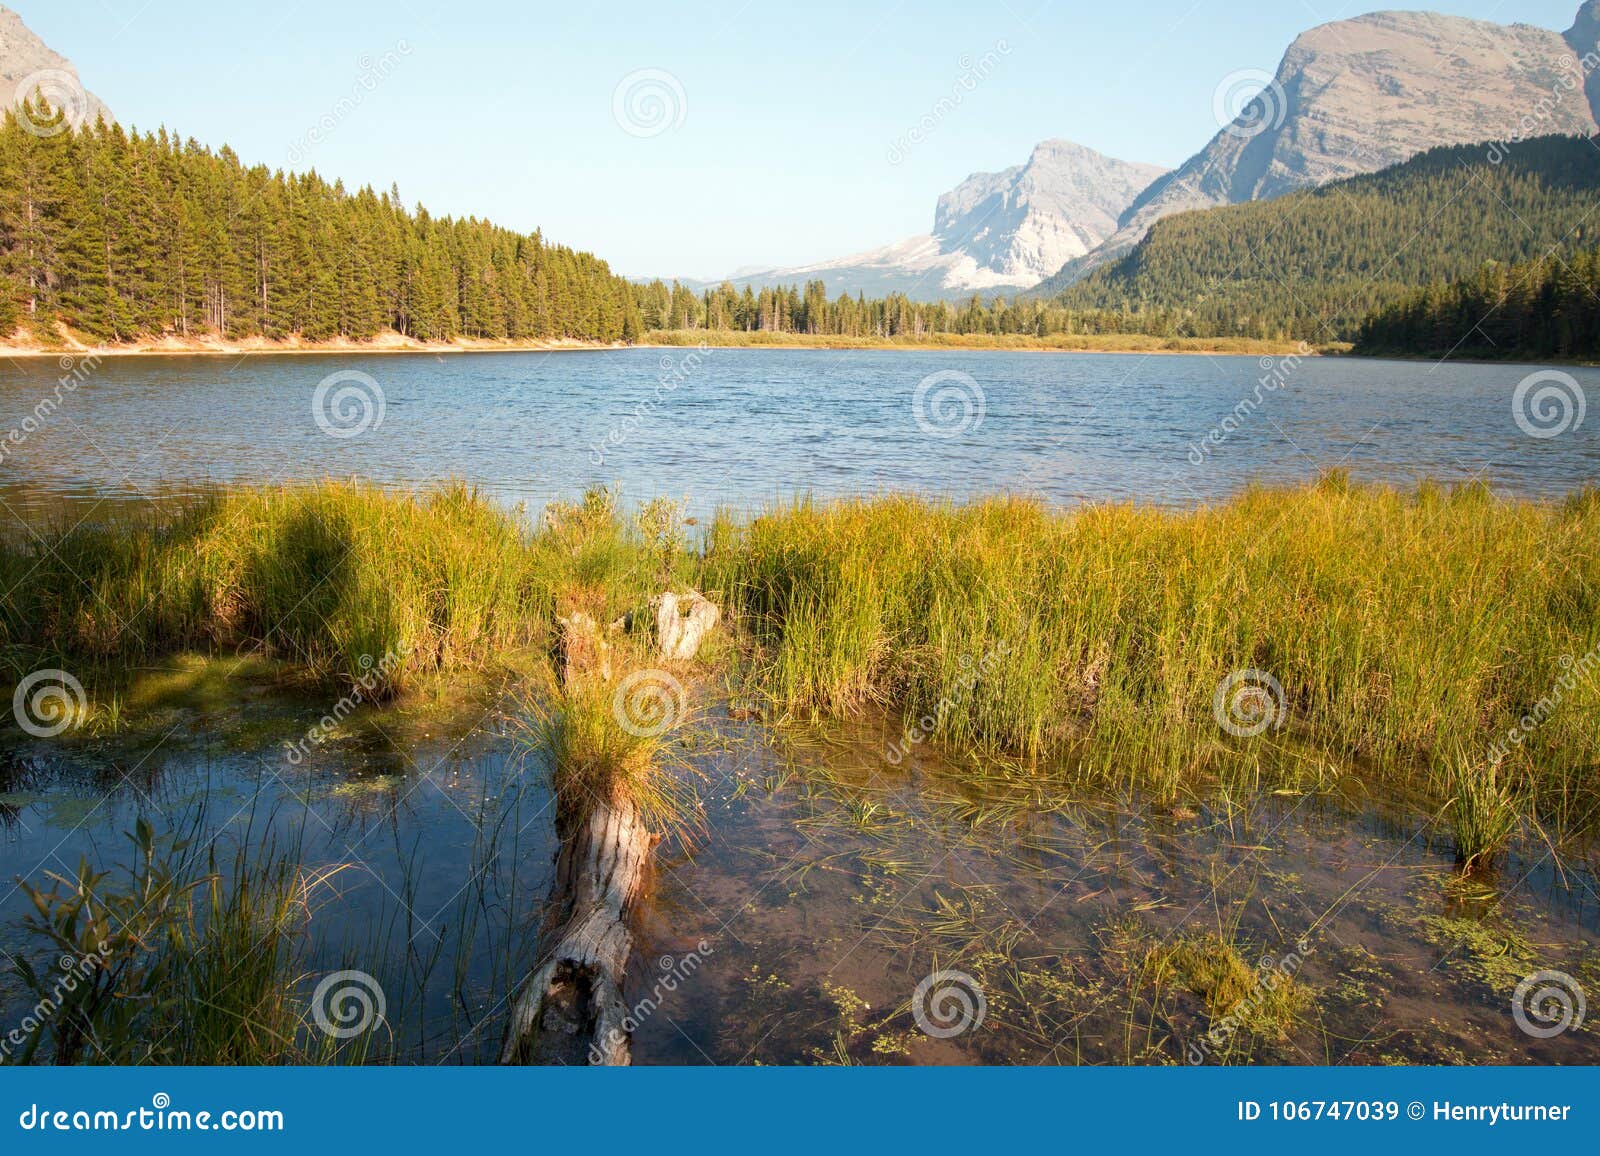 grassy shore of fishercap lake in glacier national park in montana usa